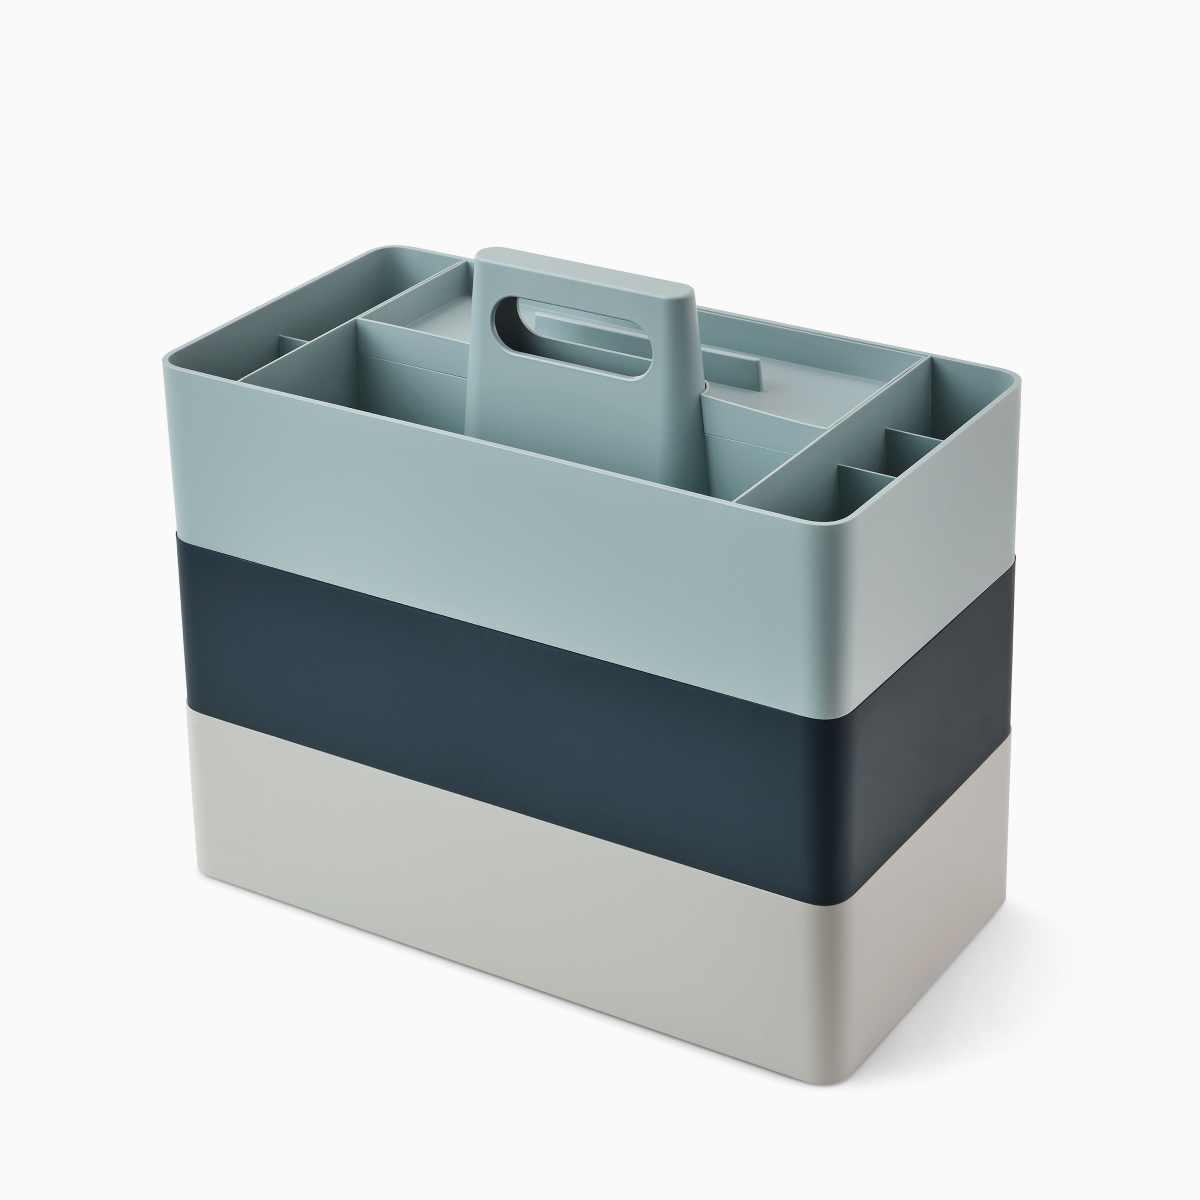 Cajas de almacenamiento de la caja para útiles de trabajo OE1 grises, azul oscuro y azul claro apiladas una encima de la otra, vistas desde un ángulo.